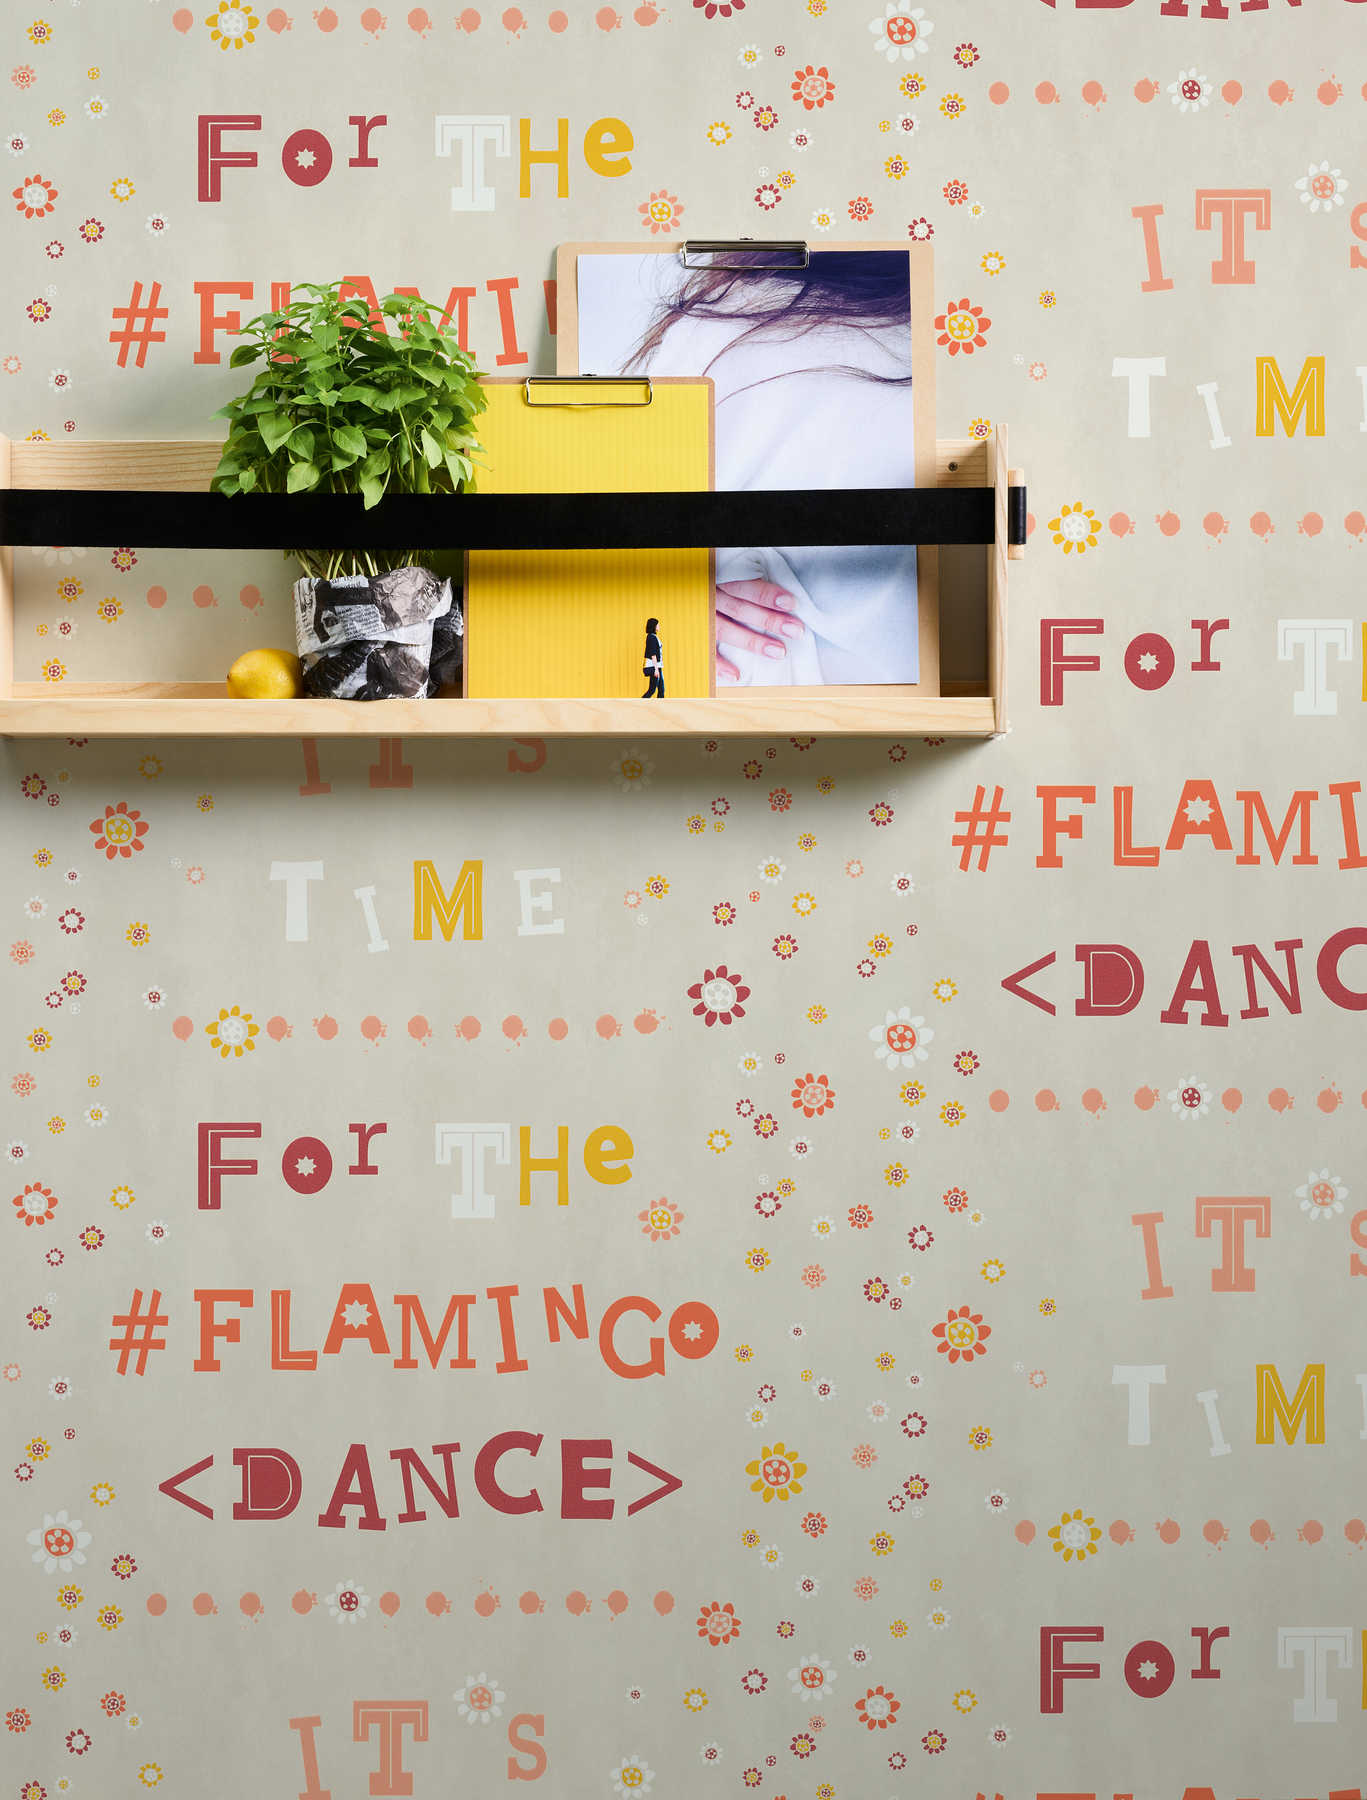             Vliestapete Flamingo & Blumen mit Letter Design – Beige, Orange
        